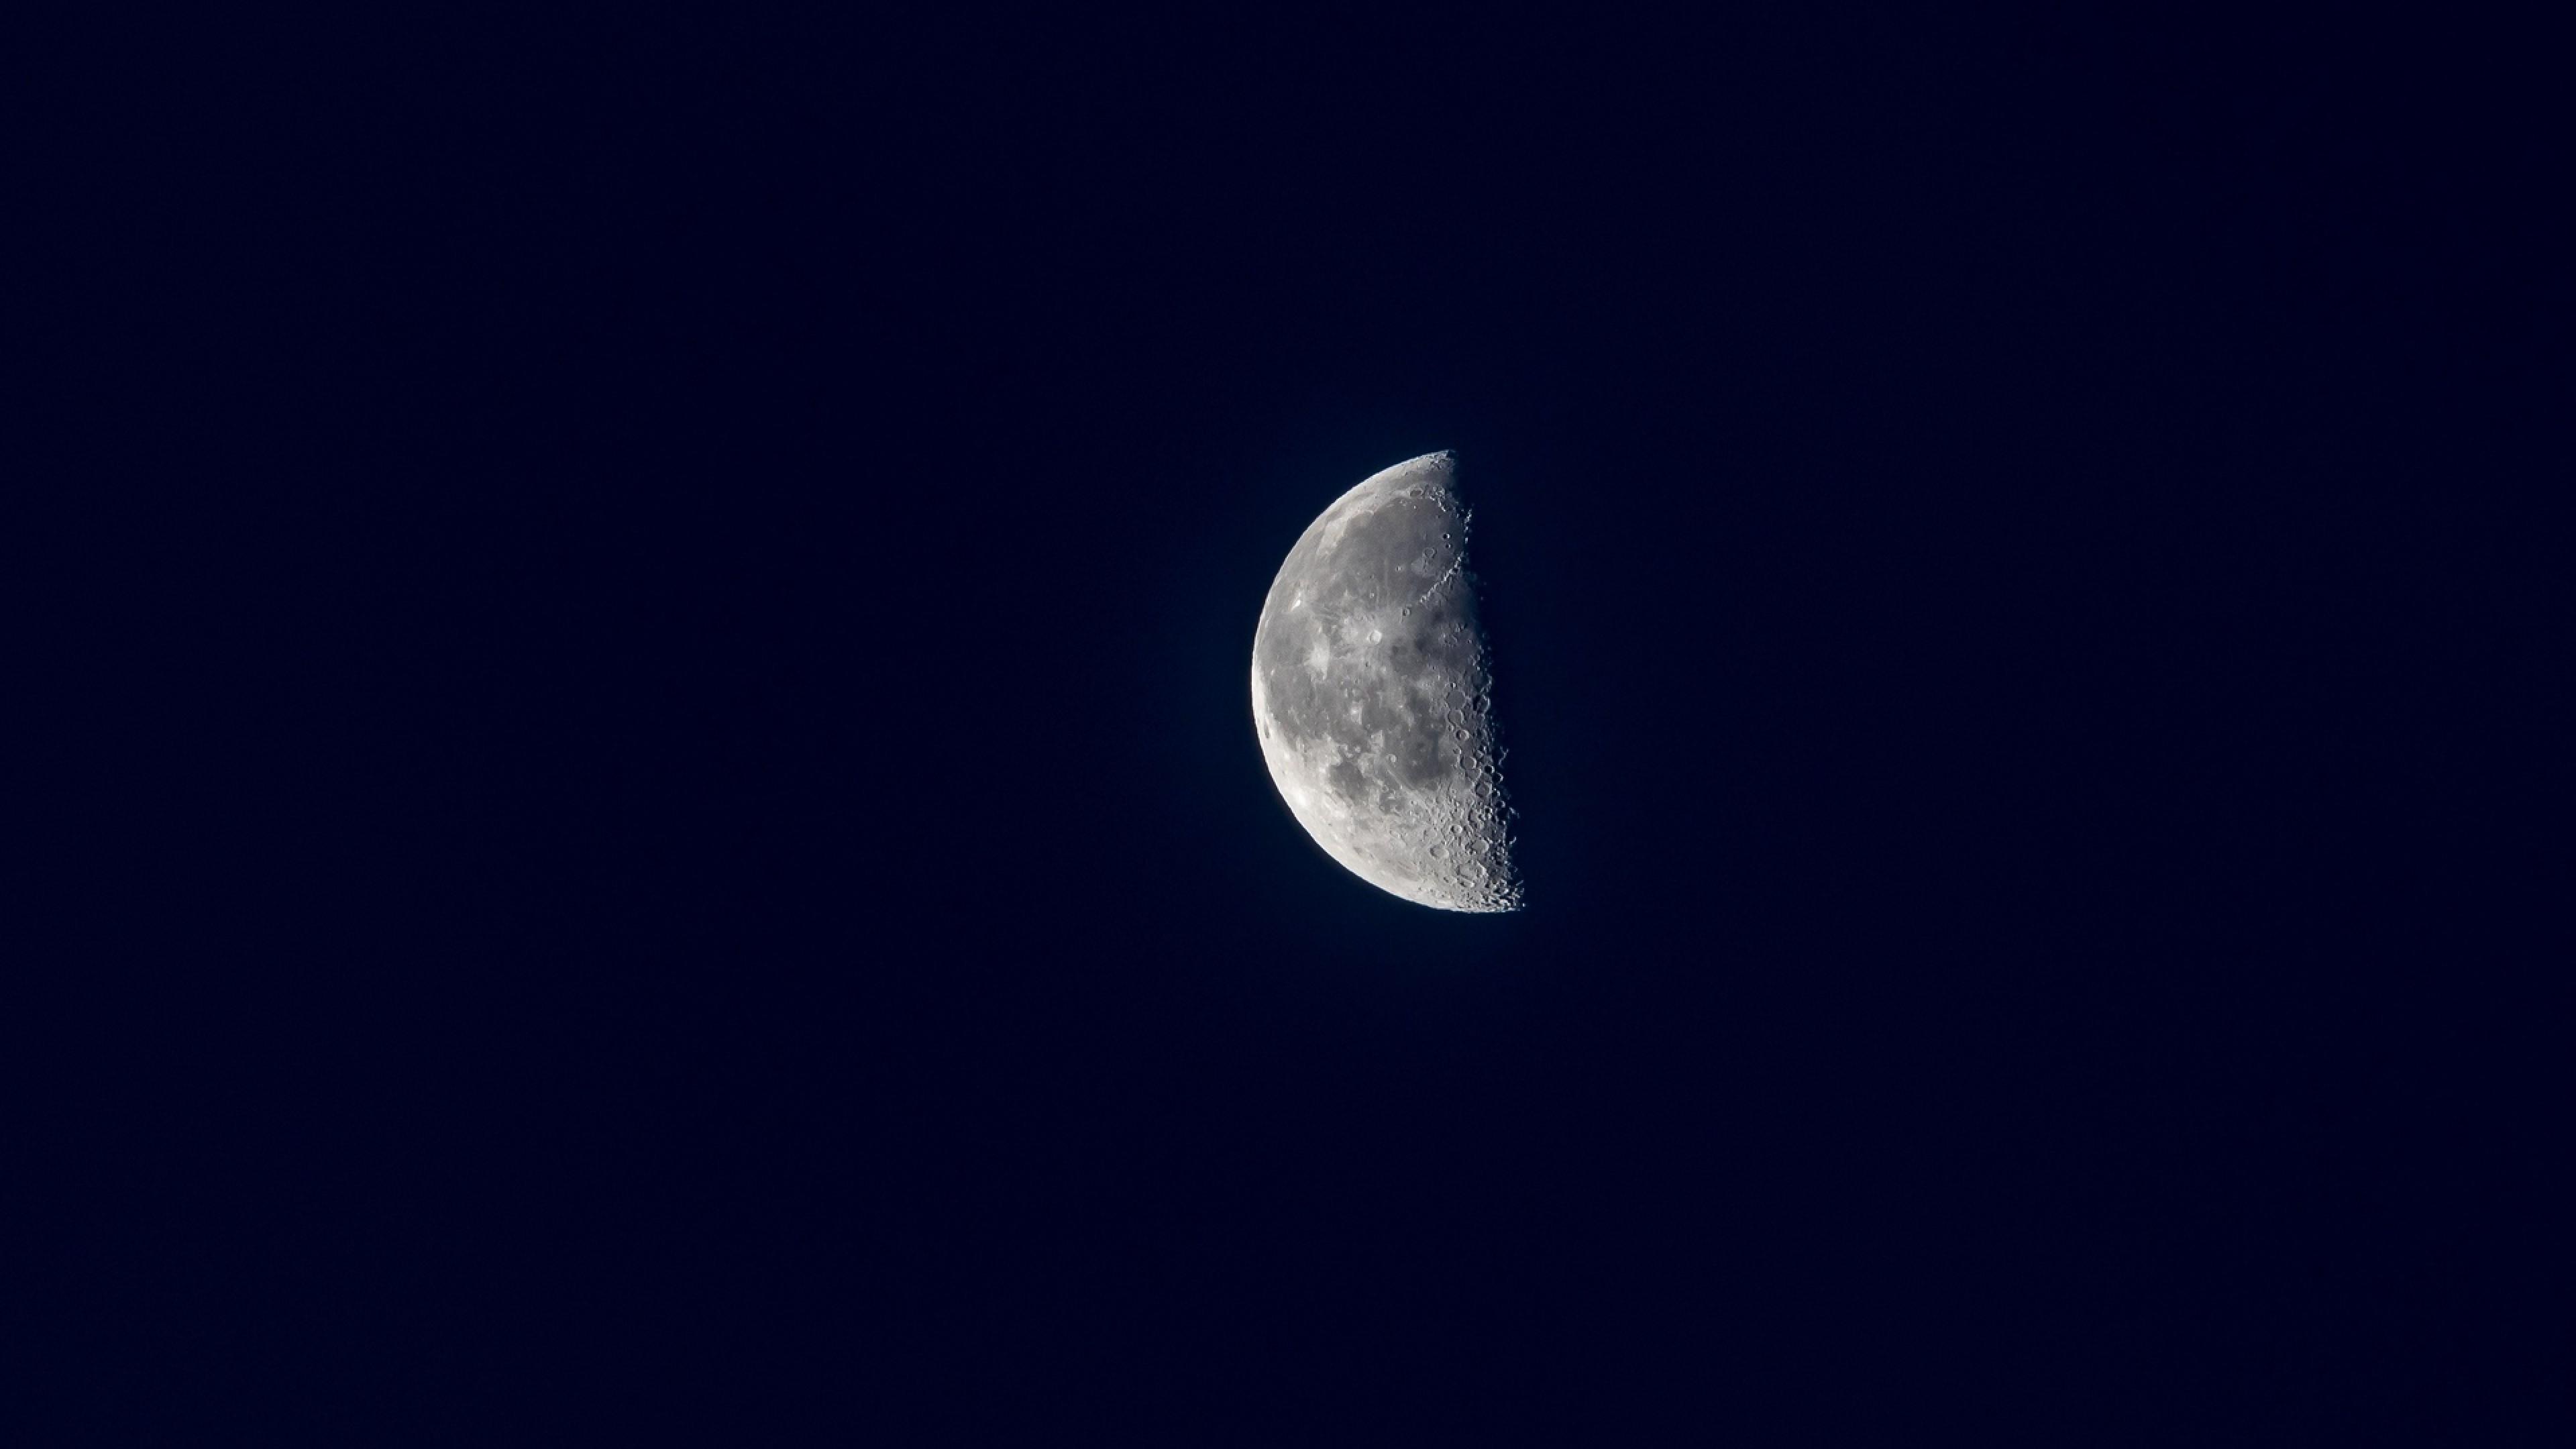 Moon view through a space satellite HD Wallpaper 4K Ultra HD - HD Wallpaper  